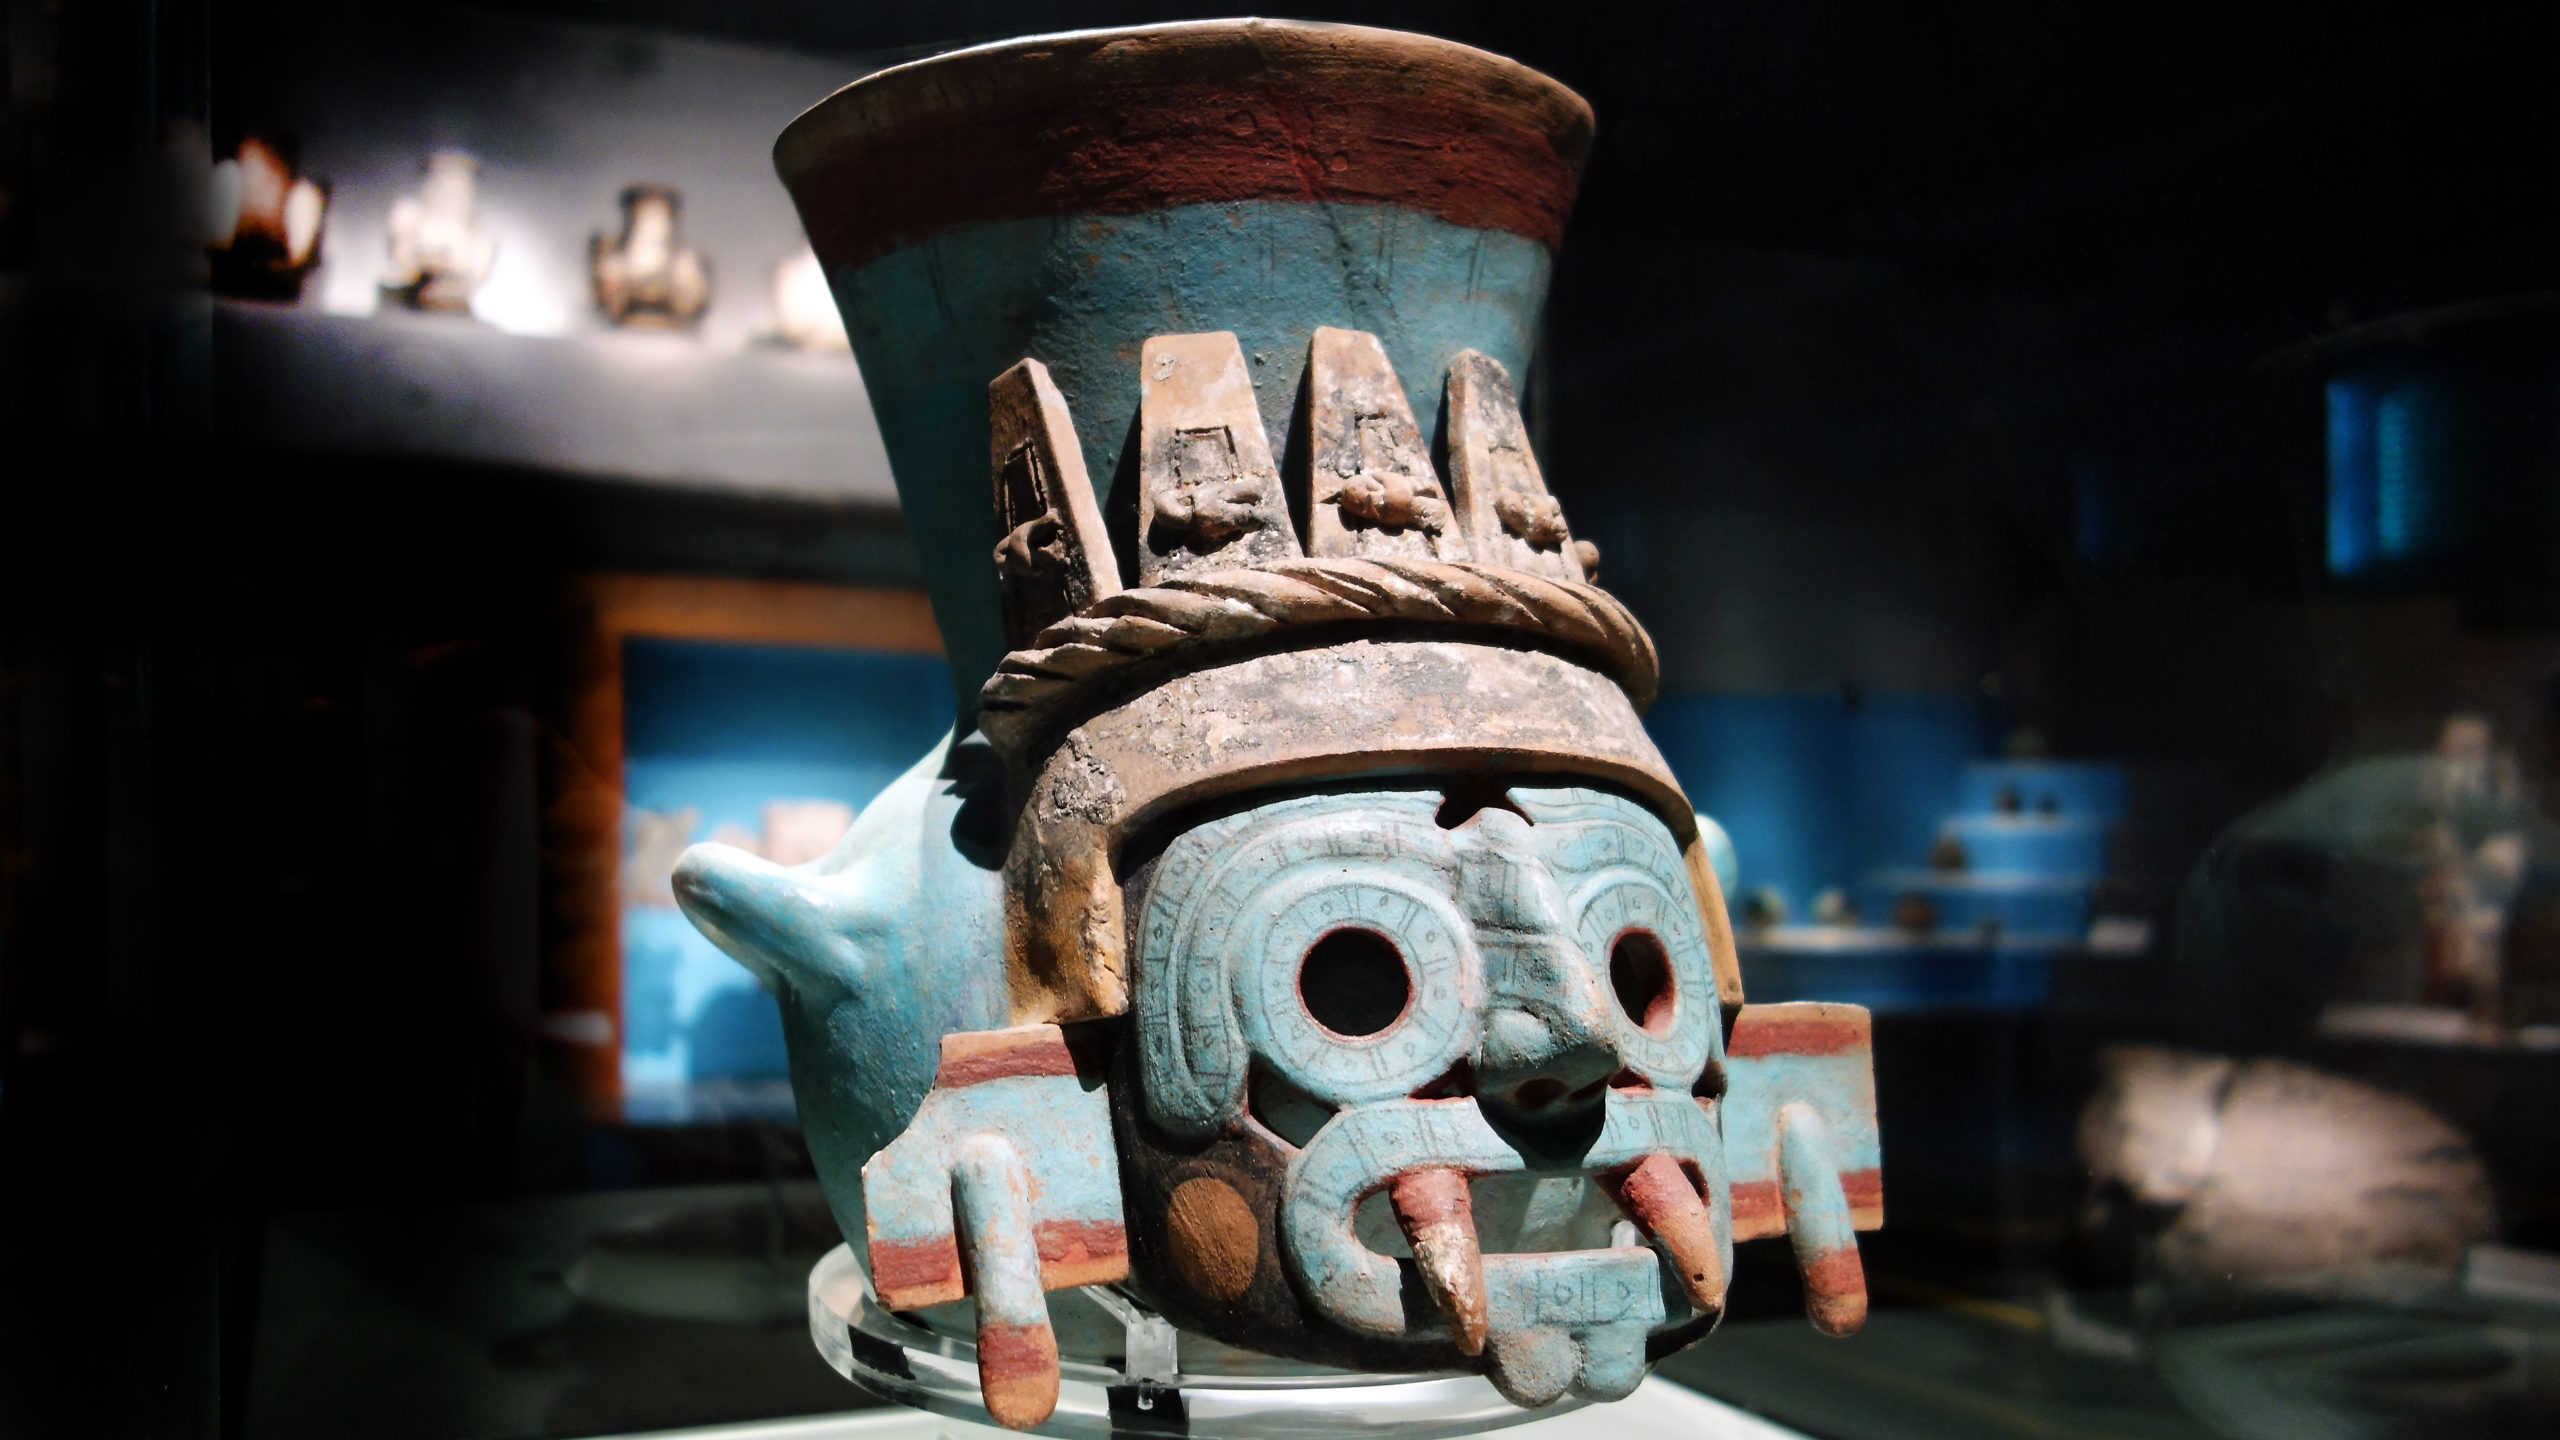 Tlaloc vessel (Mexica/Aztec), c. 1440-70, found Templo Mayor, Tenochtitlan, ceramic (Museo del Templo Mayor, Mexico City)